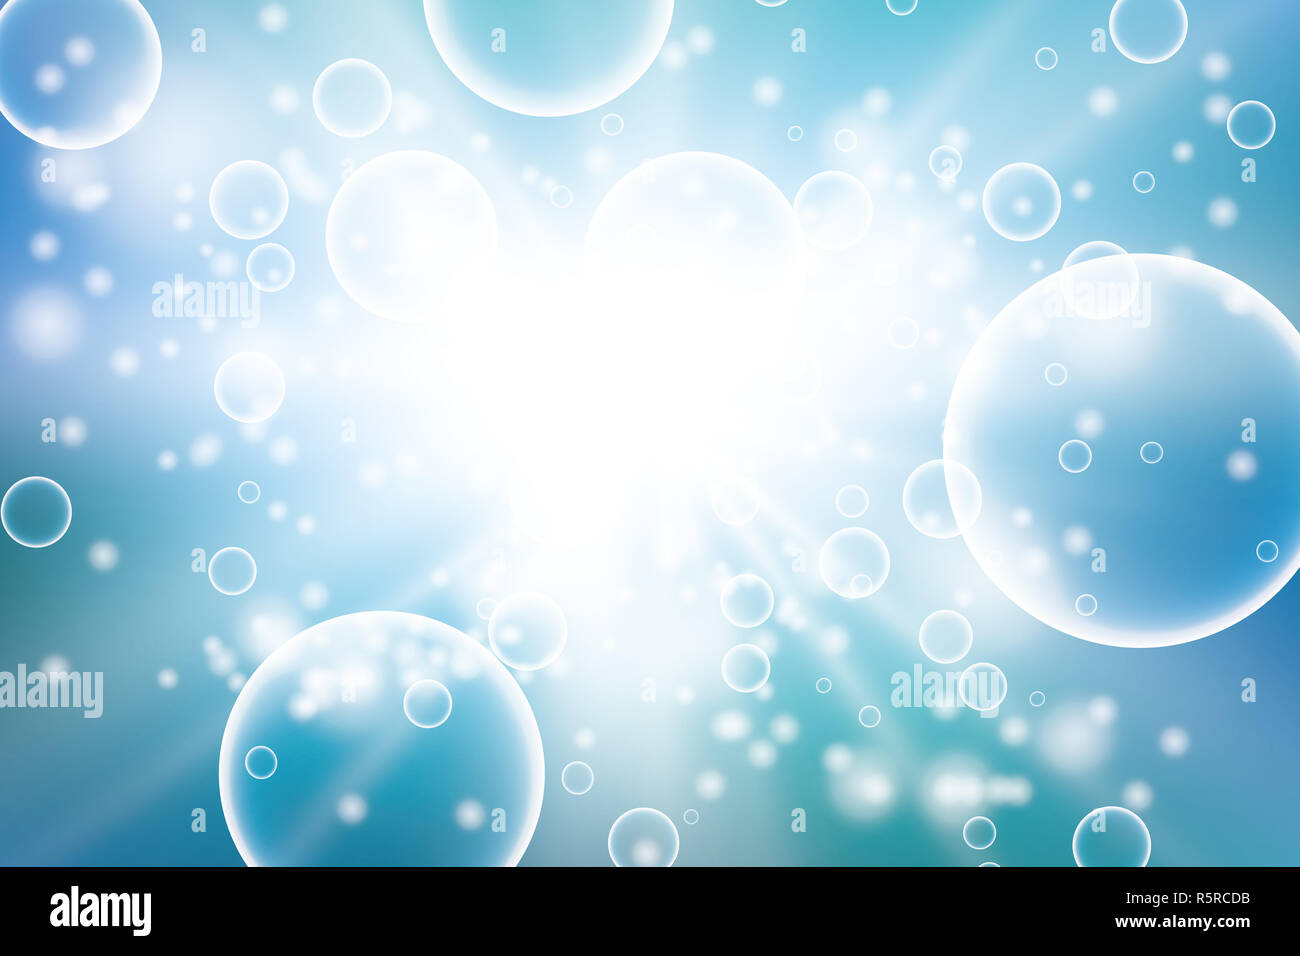 Bolle di ossigeno in acqua sfondo blu per scientifici e concetti biologici. Cerchio trasparente, sfera sfera, acqua mare o oceano, illustrazione vettoriale Foto Stock